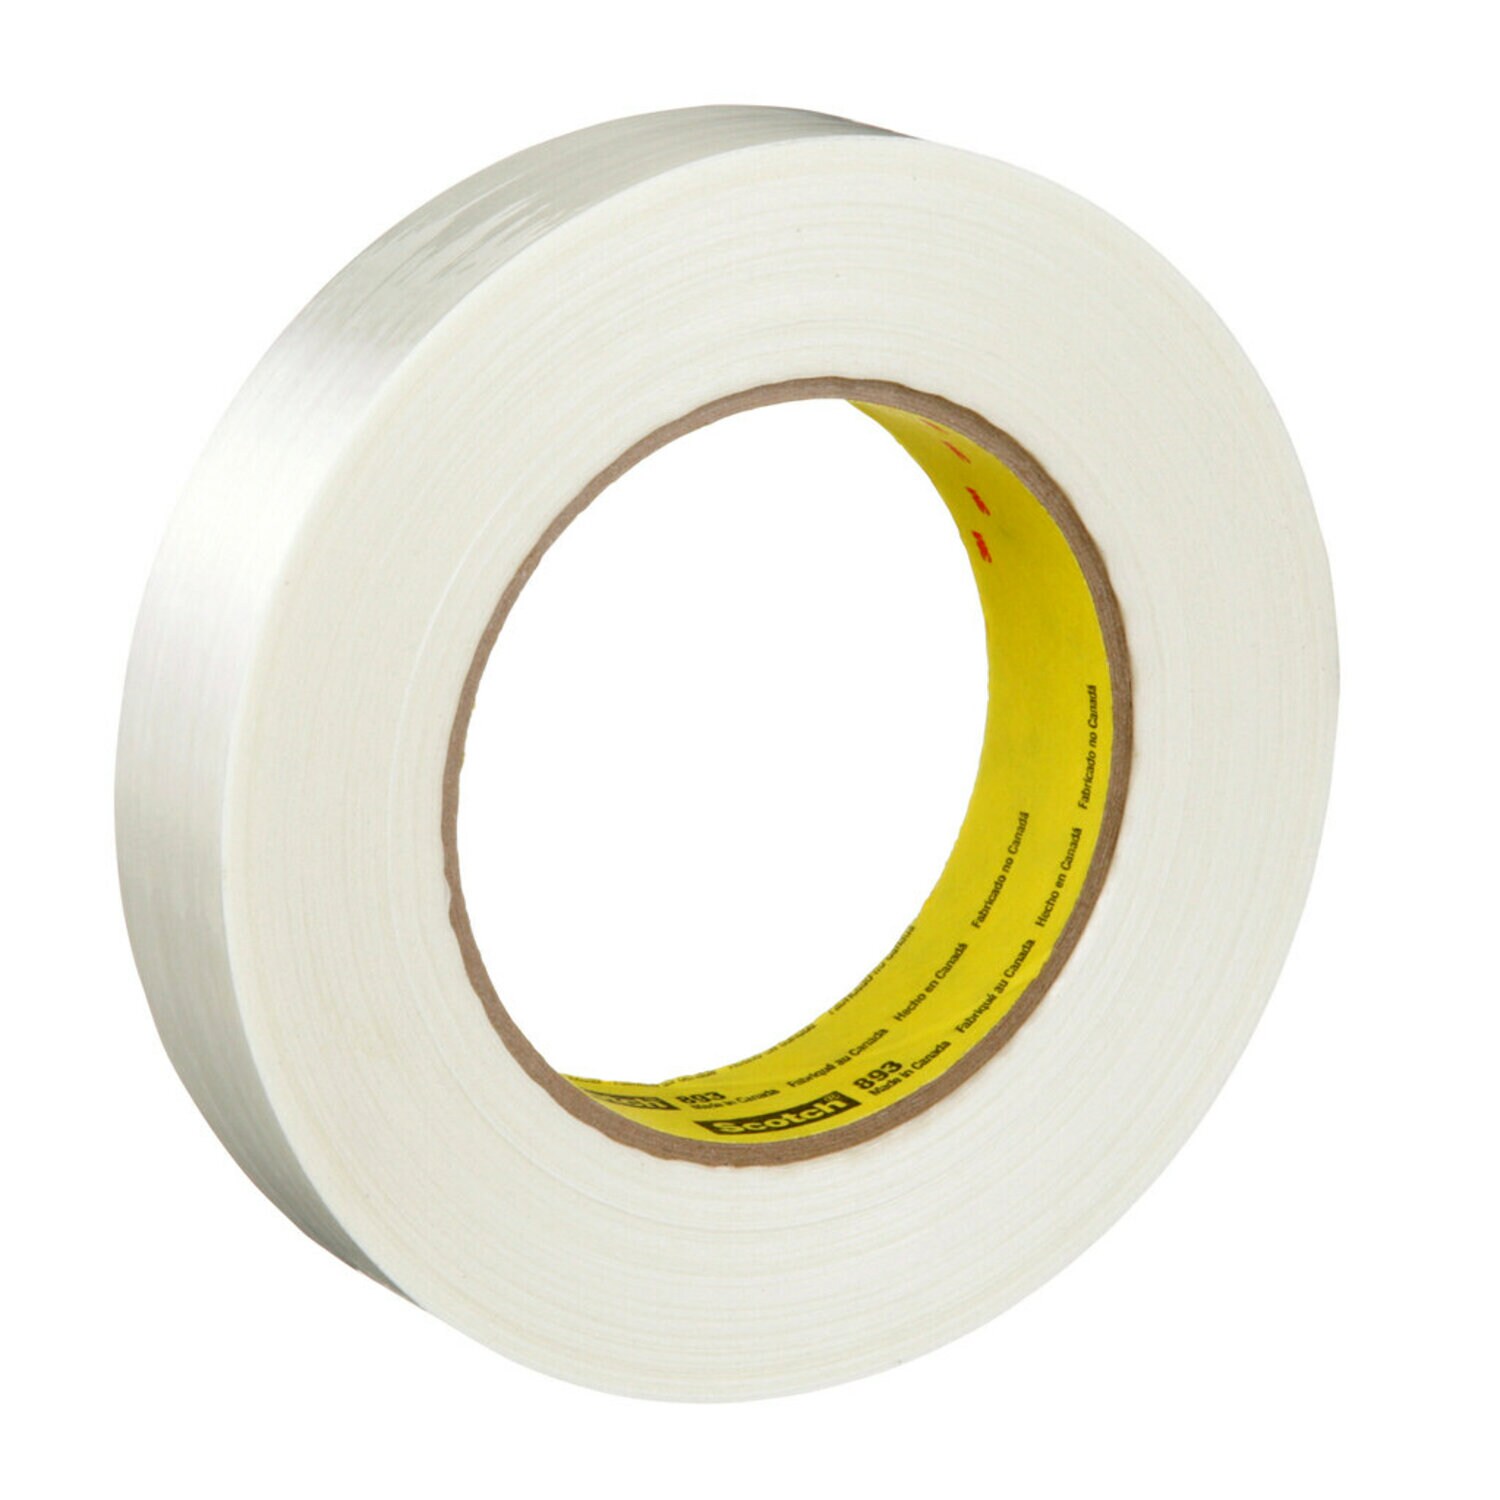 7000137296 - Scotch Filament Tape 893, Clear, 18 mm x 720 m, 6 mil, 1 roll per case